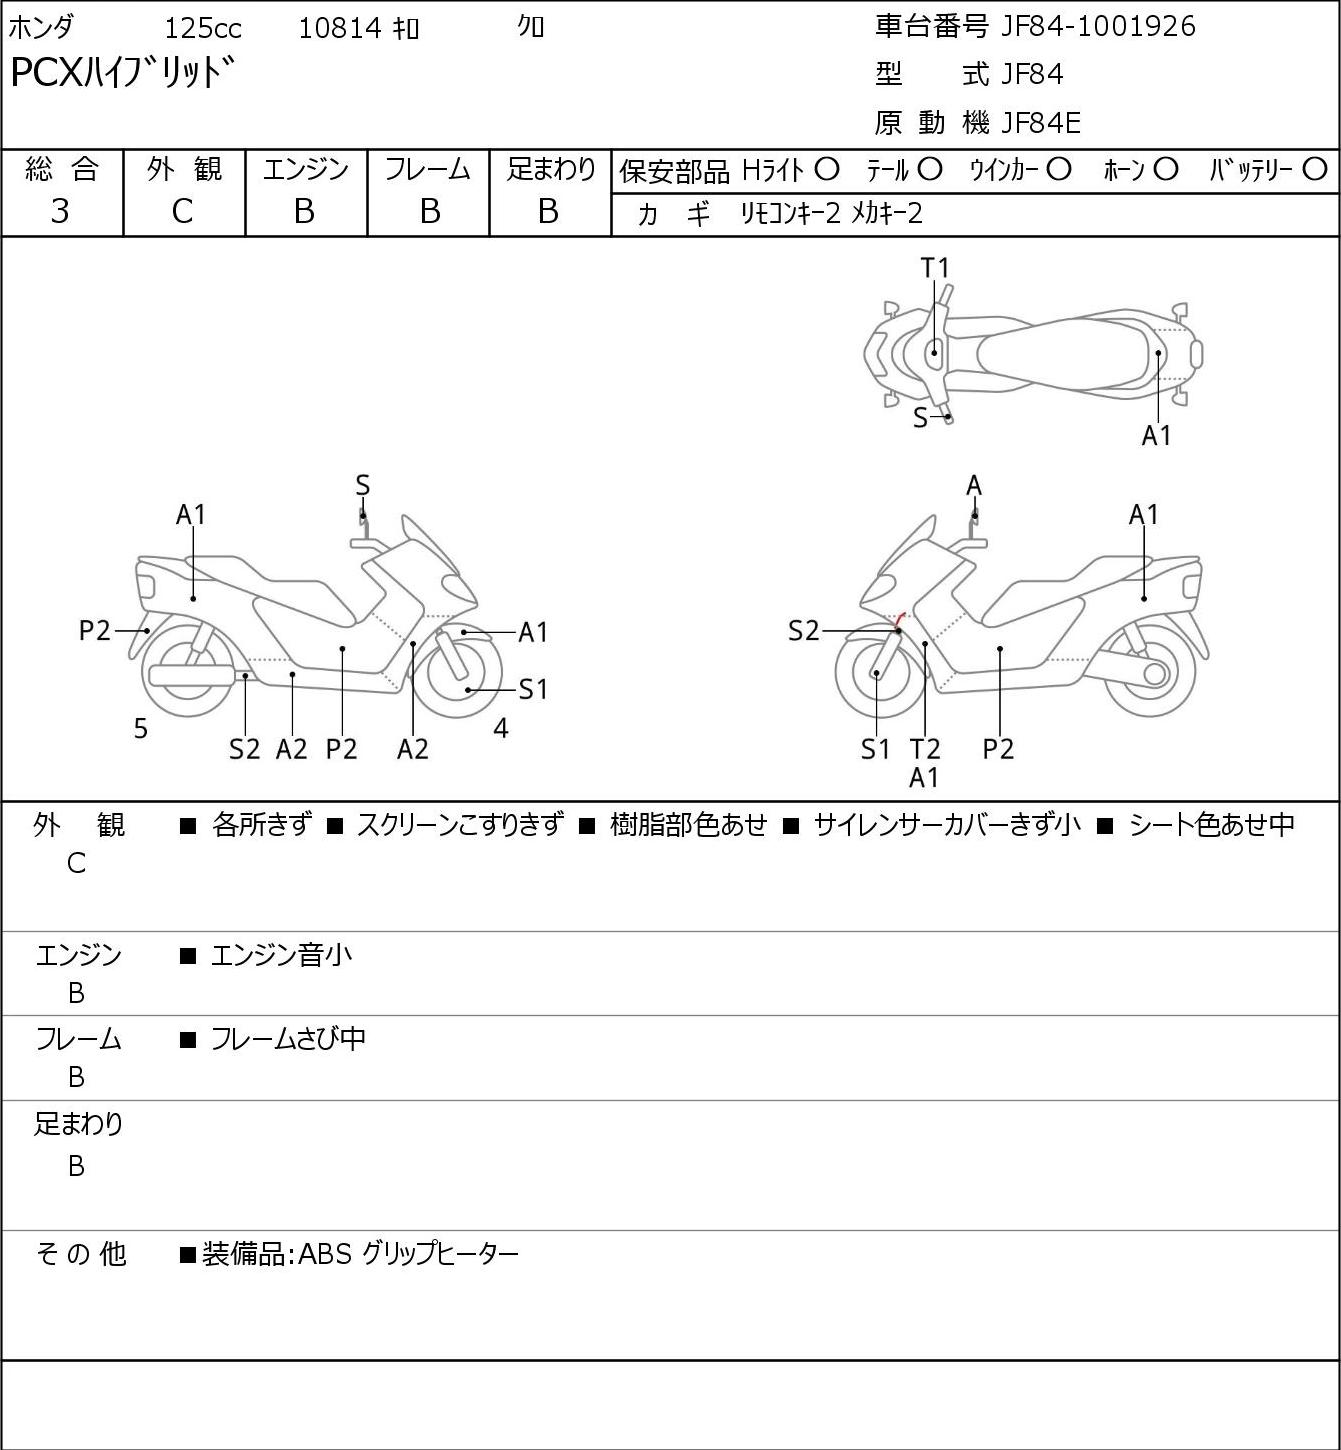 Honda PCX HYBRID JF84 г. 10814